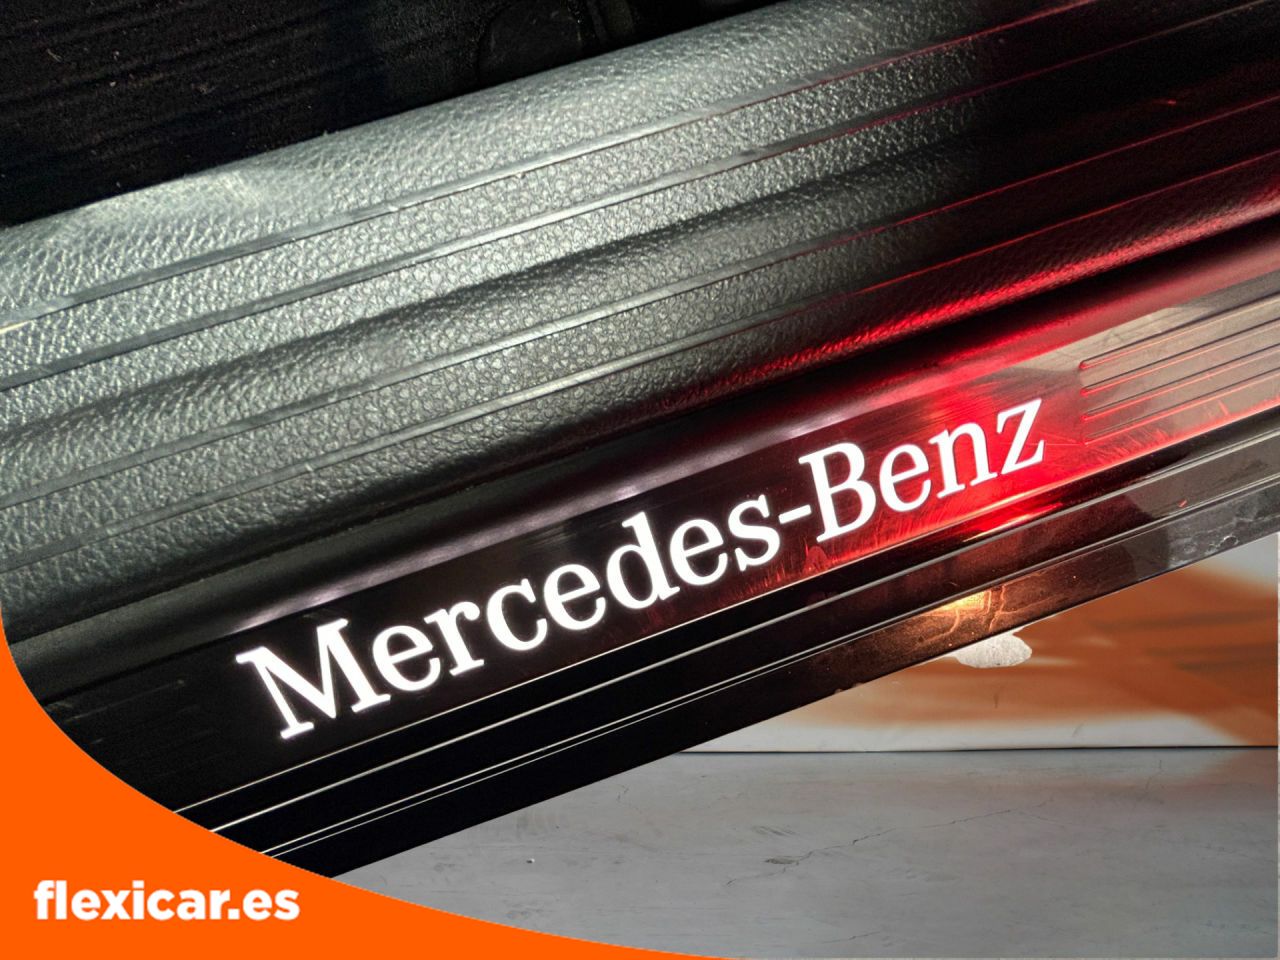 Foto Mercedes-Benz Clase A 20